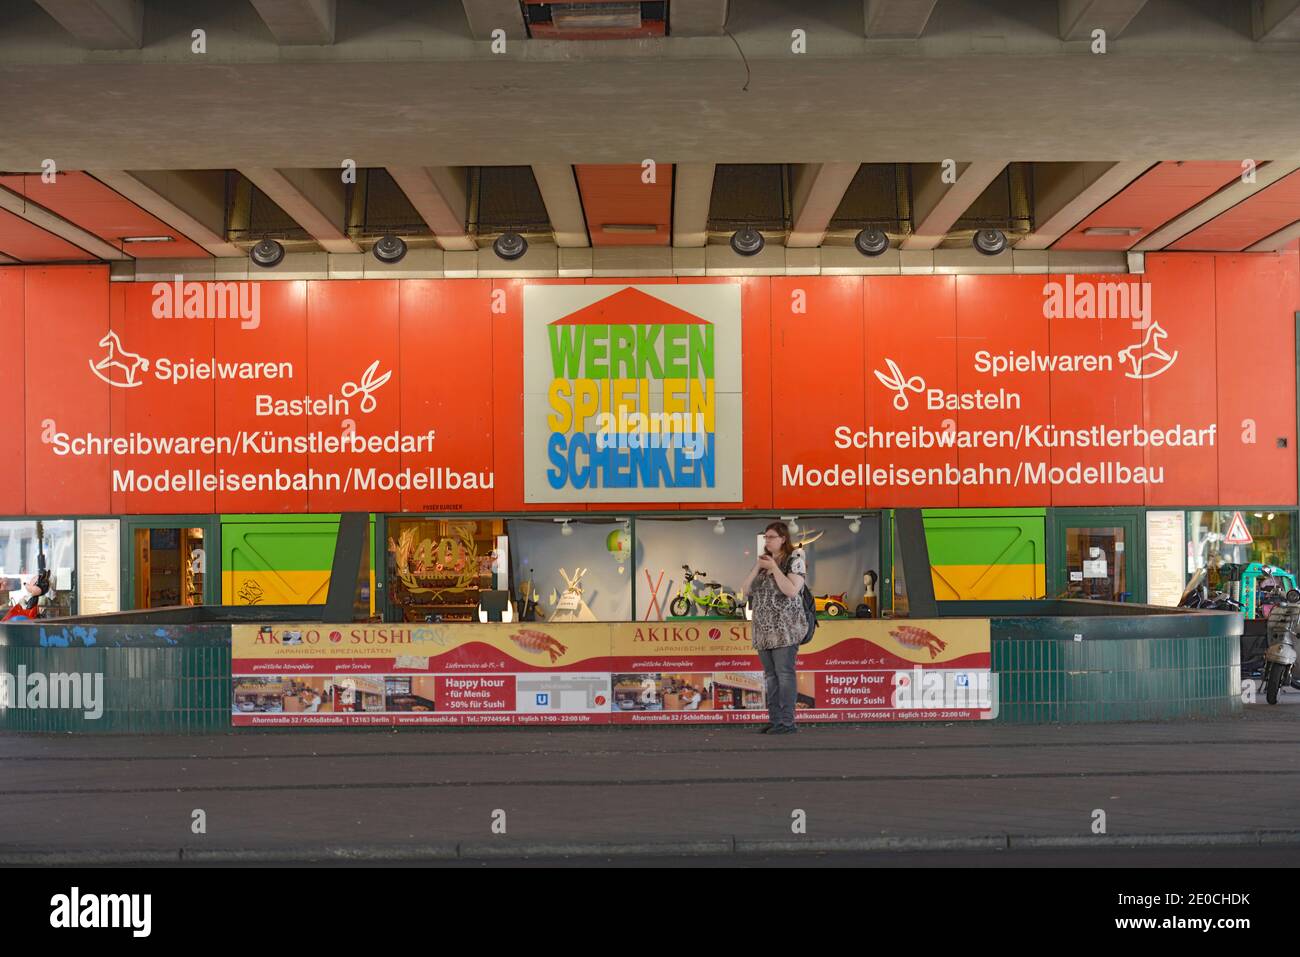 Spielwarenladen 'Werken Spielen Schenken', Schlossstrasse, Steglitz, Berlin, Deutschland Stock Photo